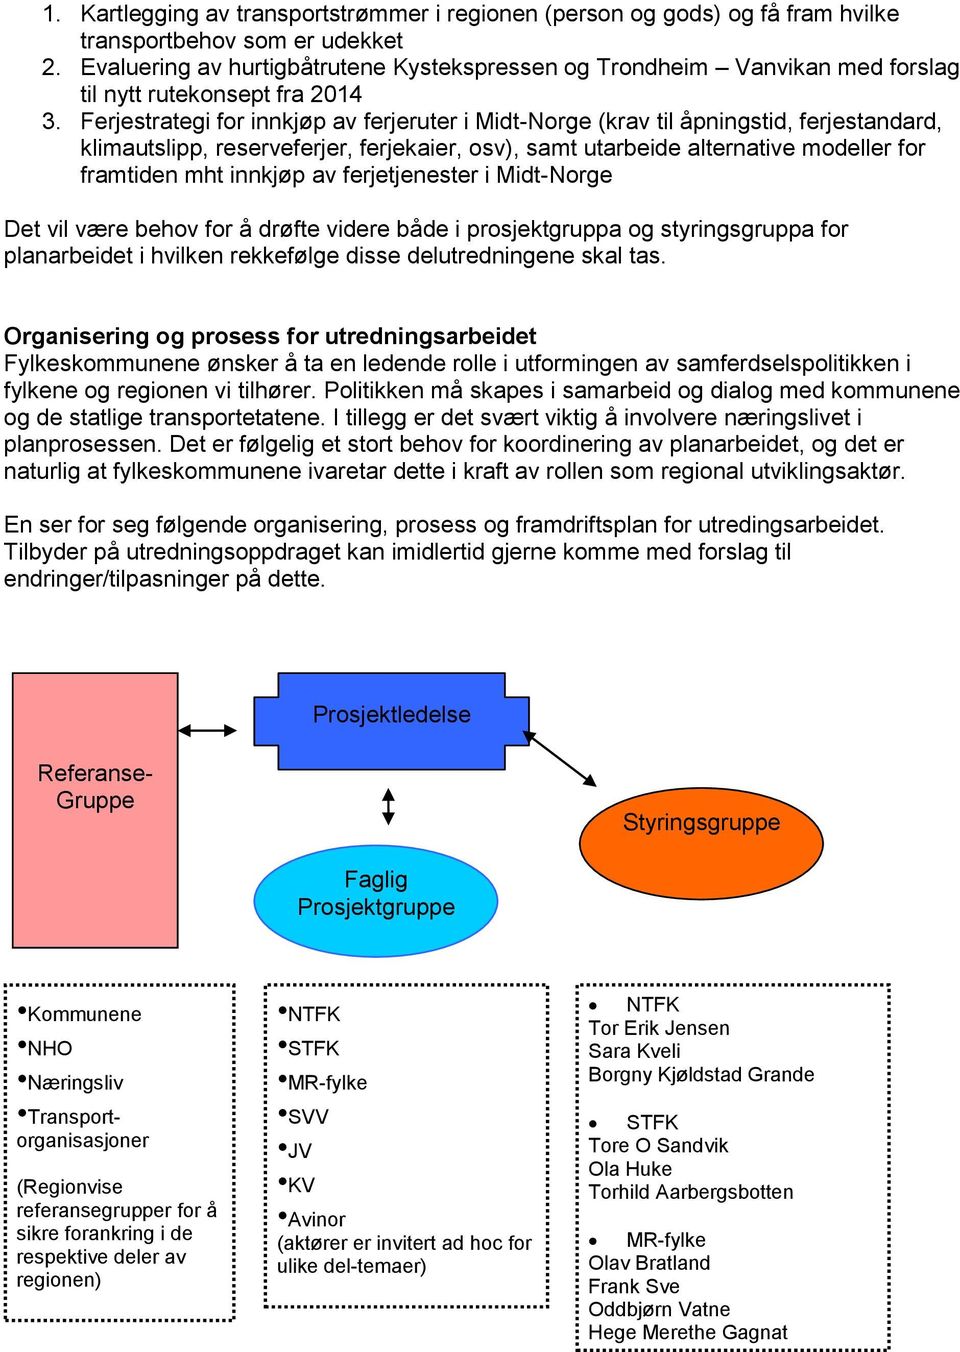 Ferjestrategi for innkjøp av ferjeruter i Midt-Norge (krav til åpningstid, ferjestandard, klimautslipp, reserveferjer, ferjekaier, osv), samt utarbeide alternative modeller for framtiden mht innkjøp